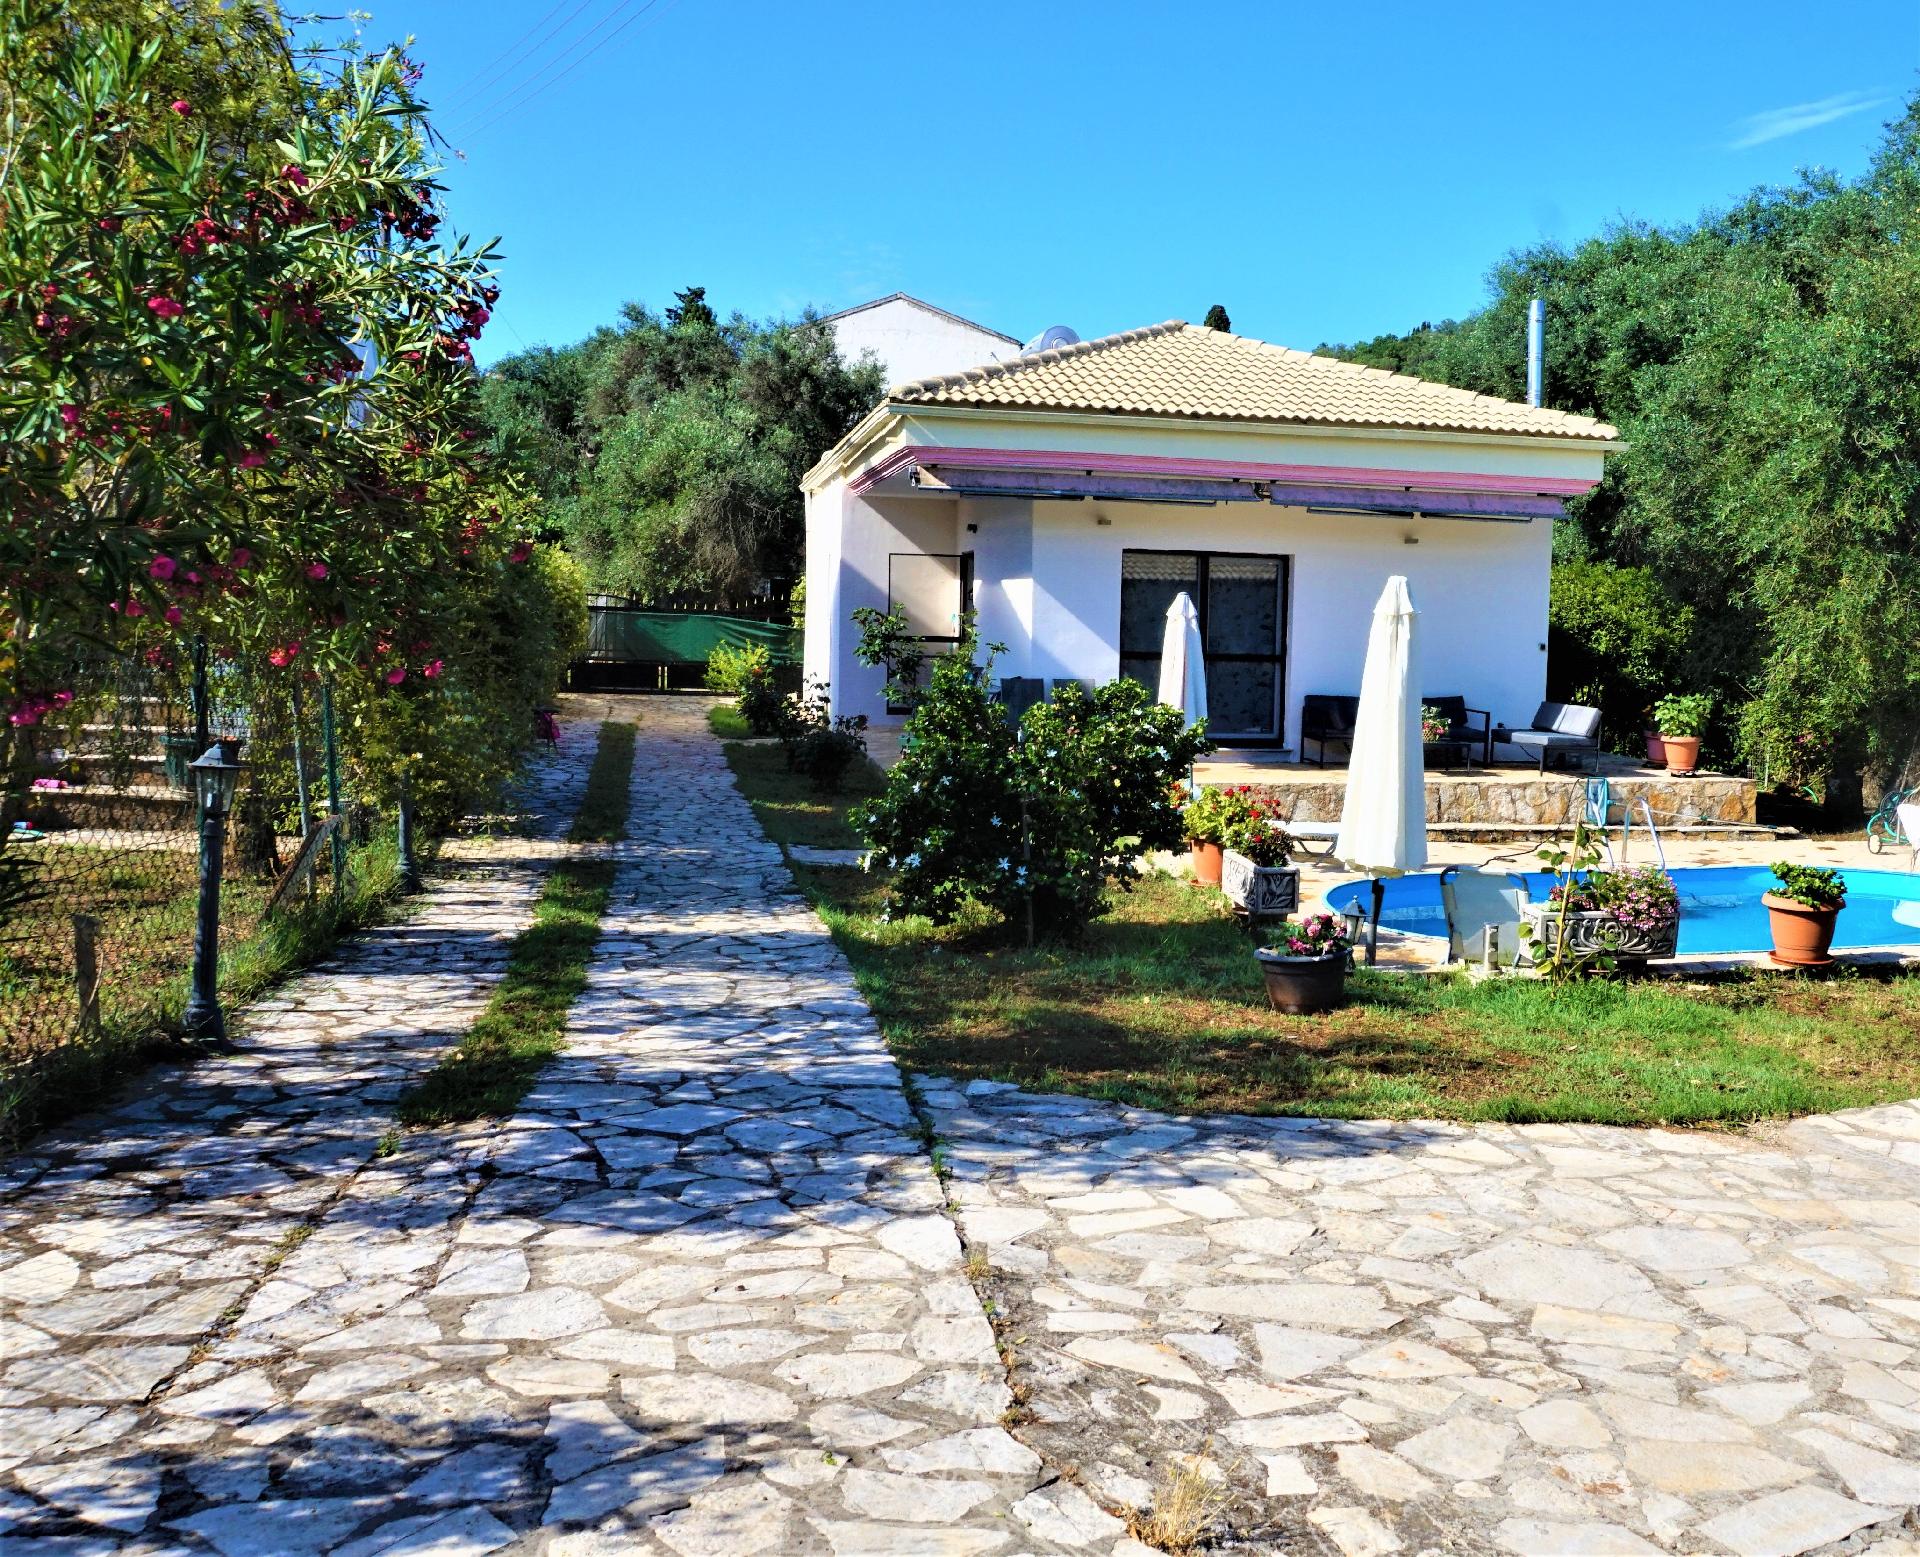 Ausserhalb gelegenes, freistehendes Ferienhaus in  Ferienhaus in Griechenland